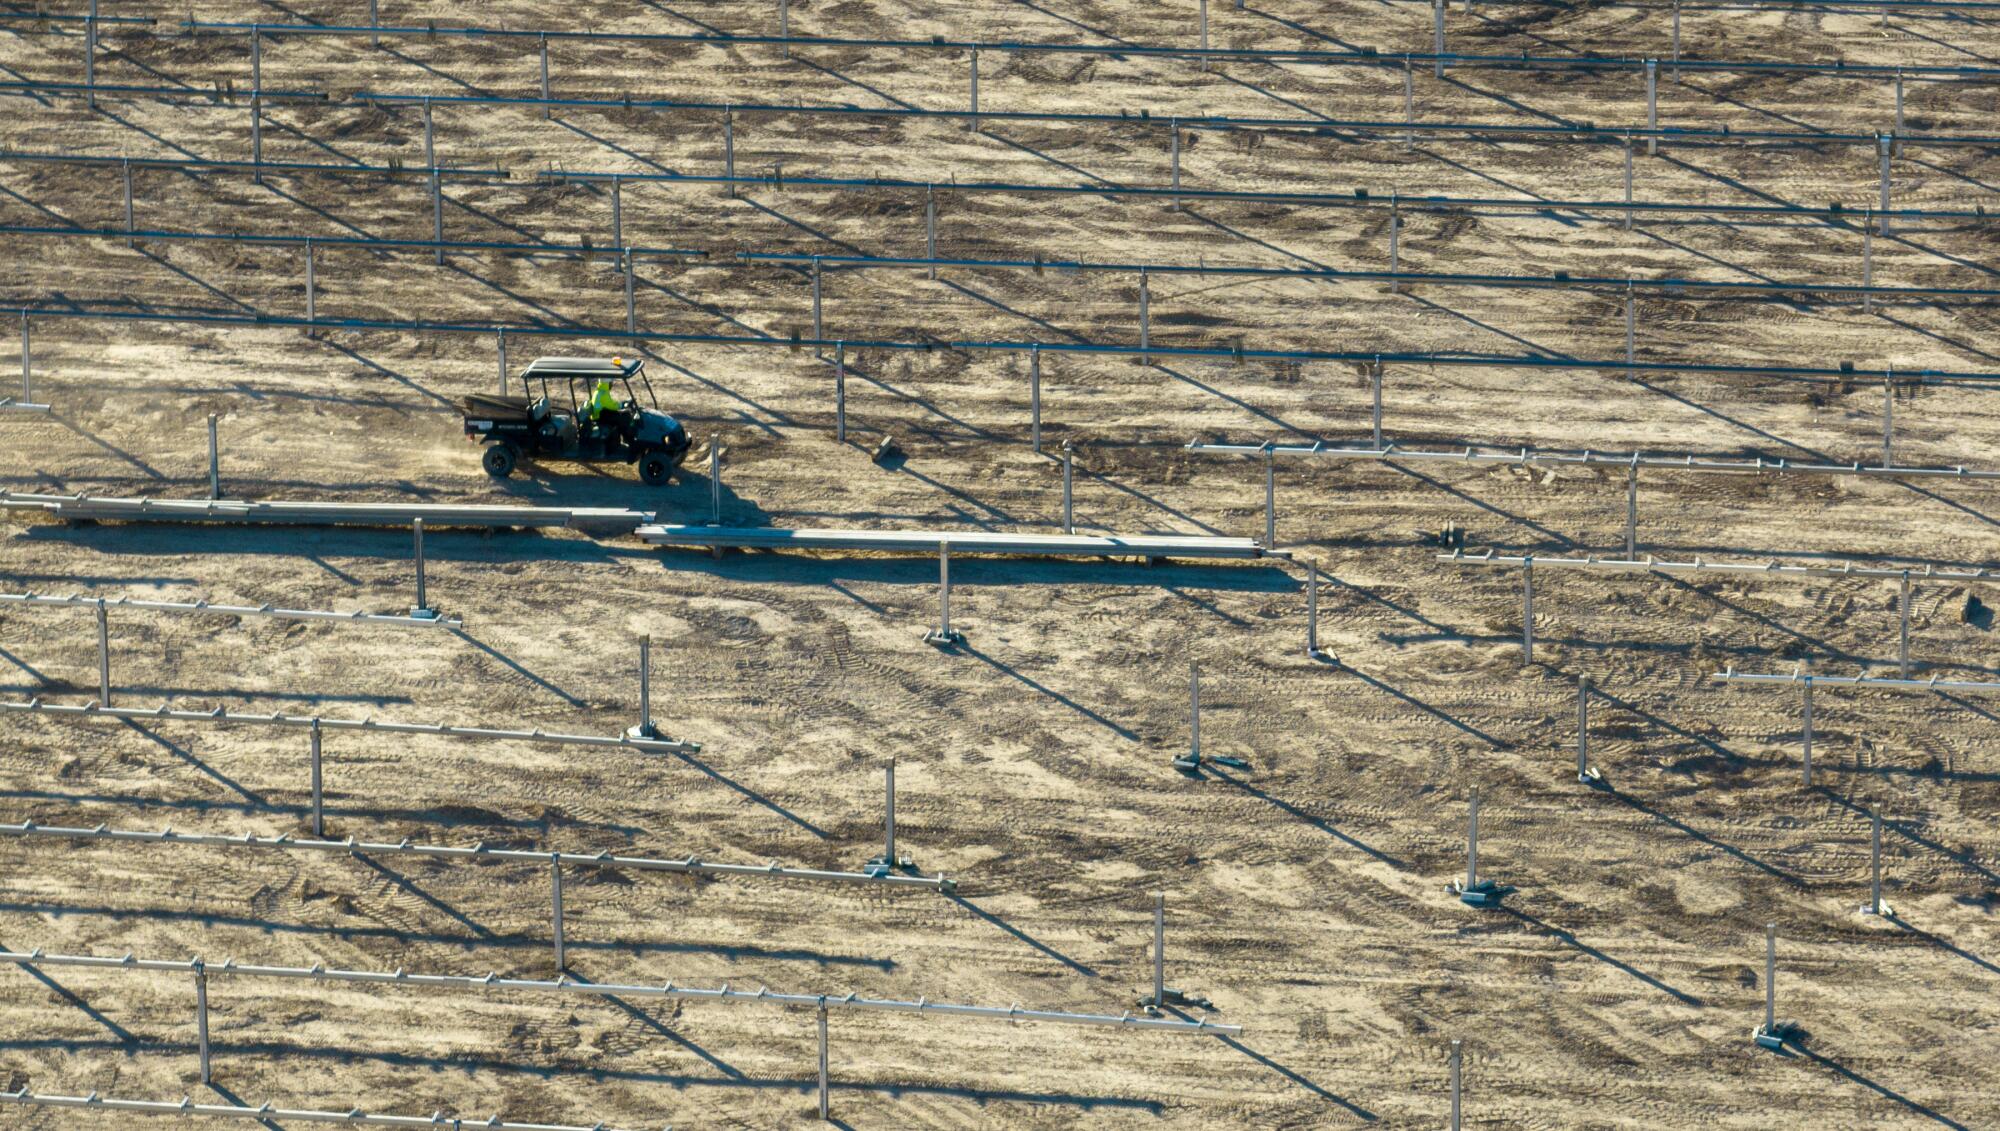 ยานพาหนะก่อสร้างที่ไซต์โครงการพลังงานแสงอาทิตย์ Dry Lake Valley ของ NV Energy ทางตอนเหนือของลาสเวกัส